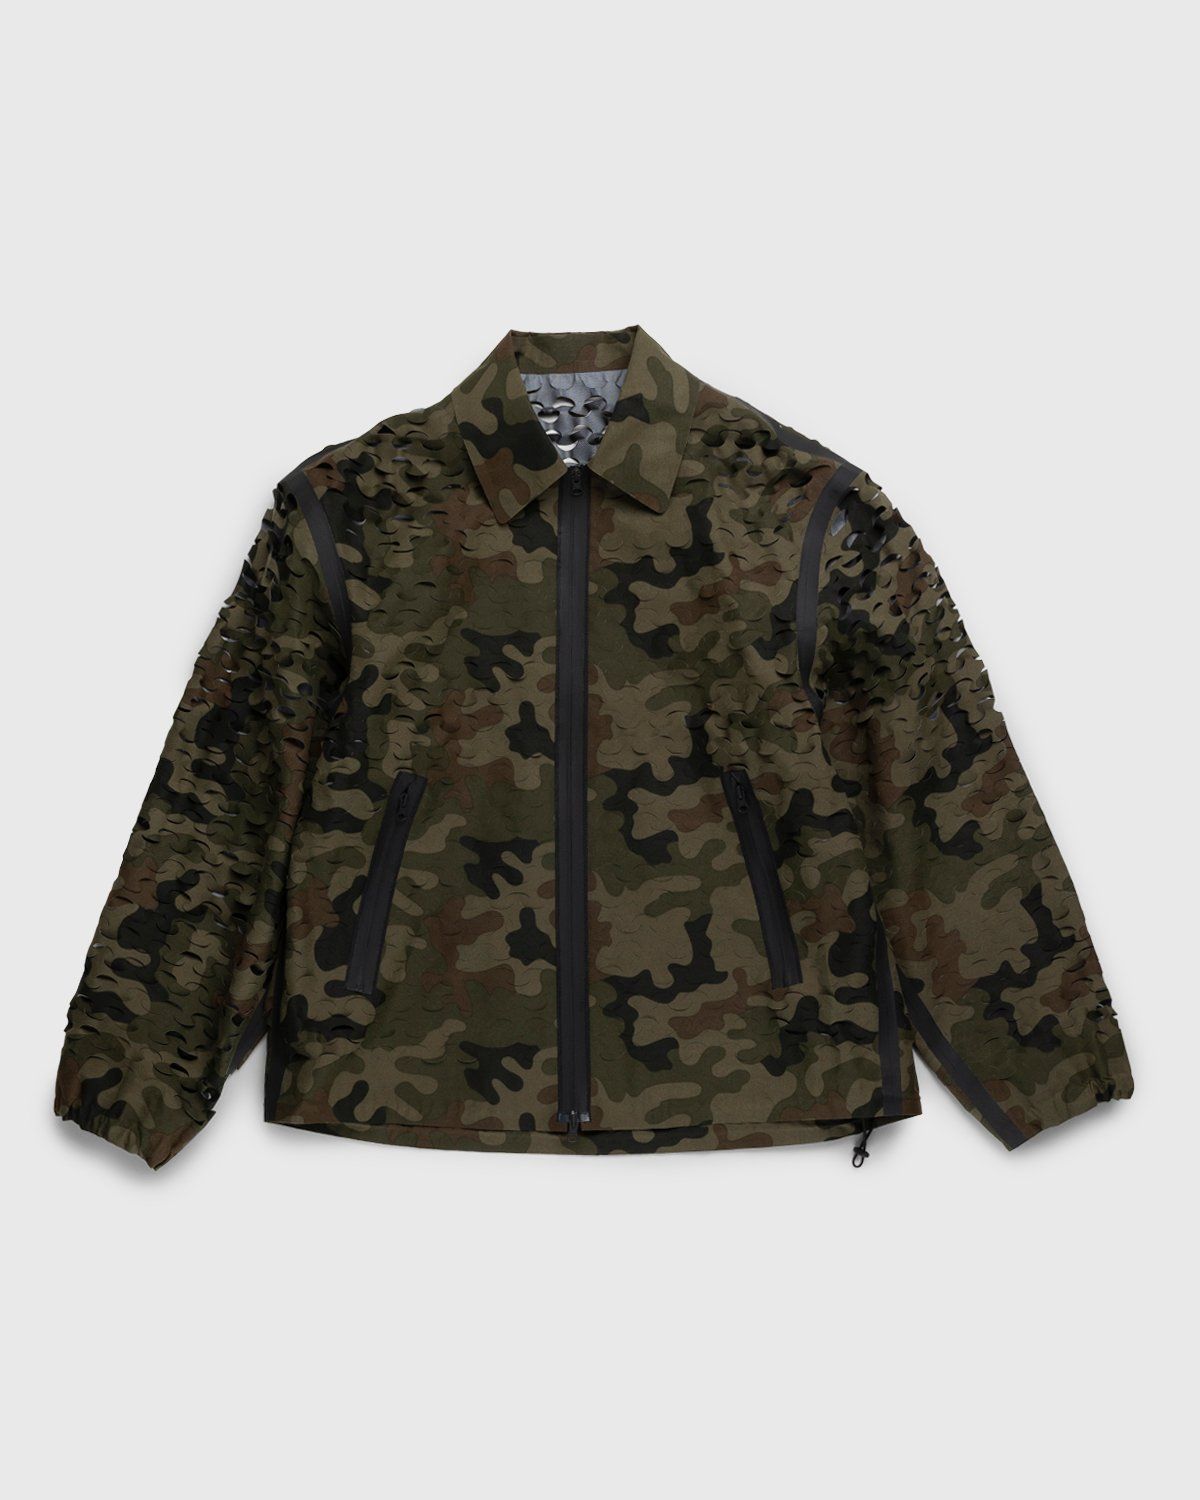 Dries van Noten – Voyde Laser Jacket Camouflage - Outerwear - Brown - Image 1